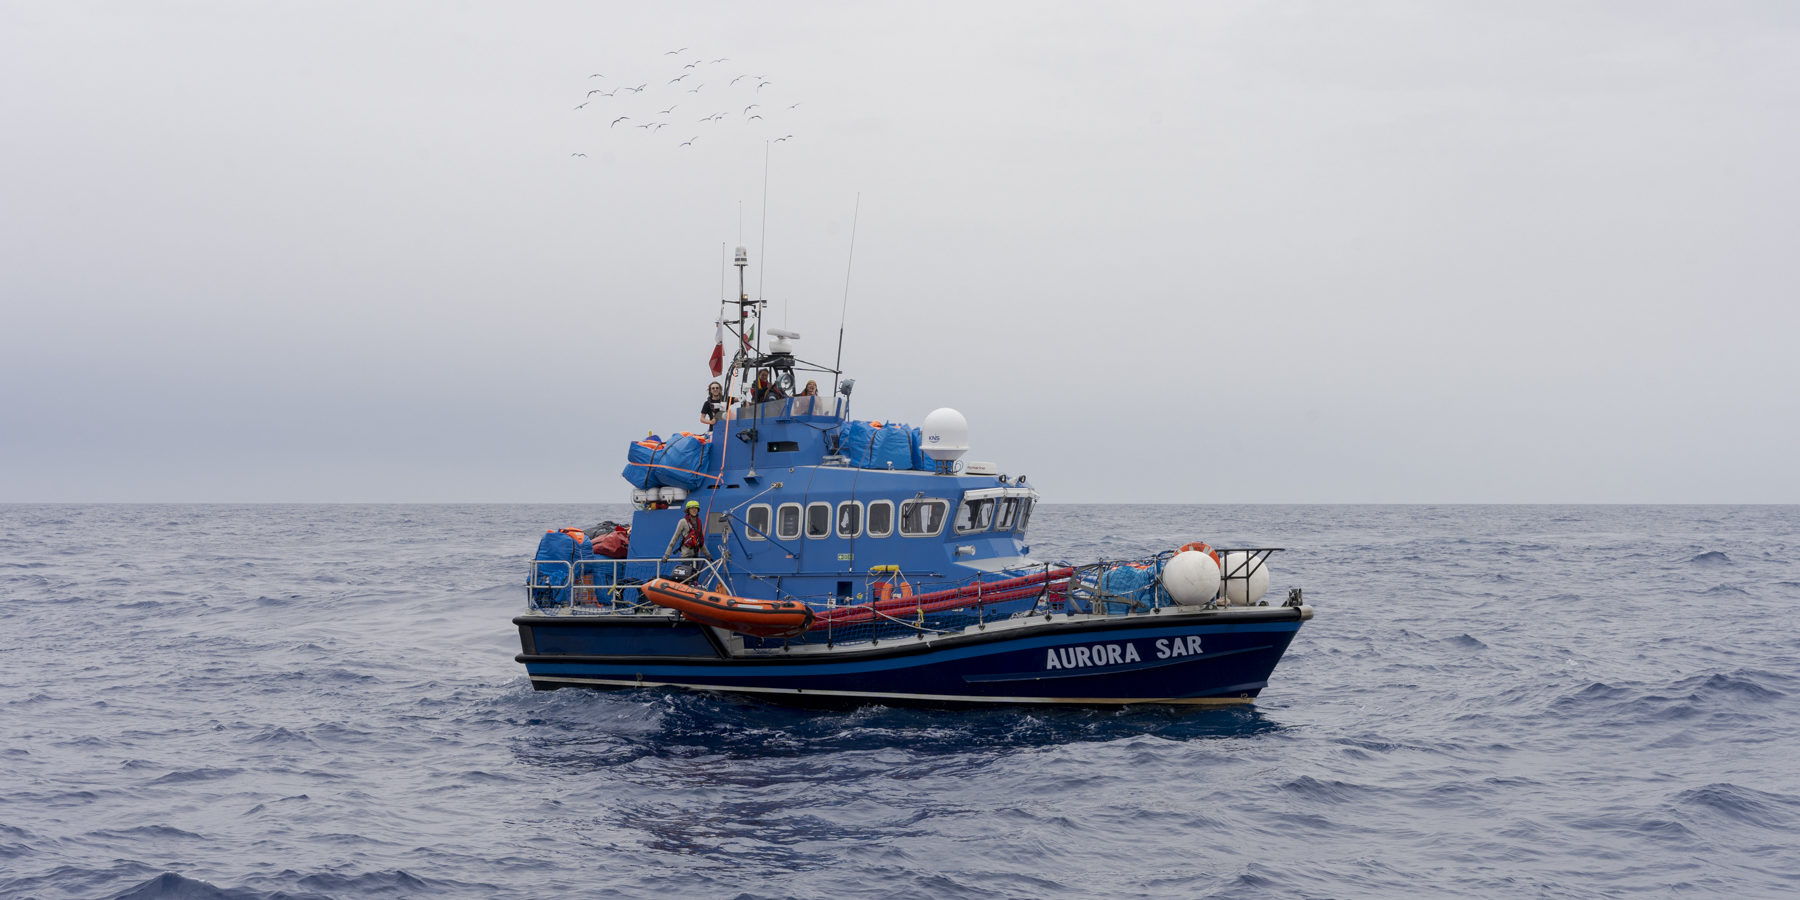 La nuova nave Aurora di Sea-Watch soccorre più di 80 persone in difficoltà